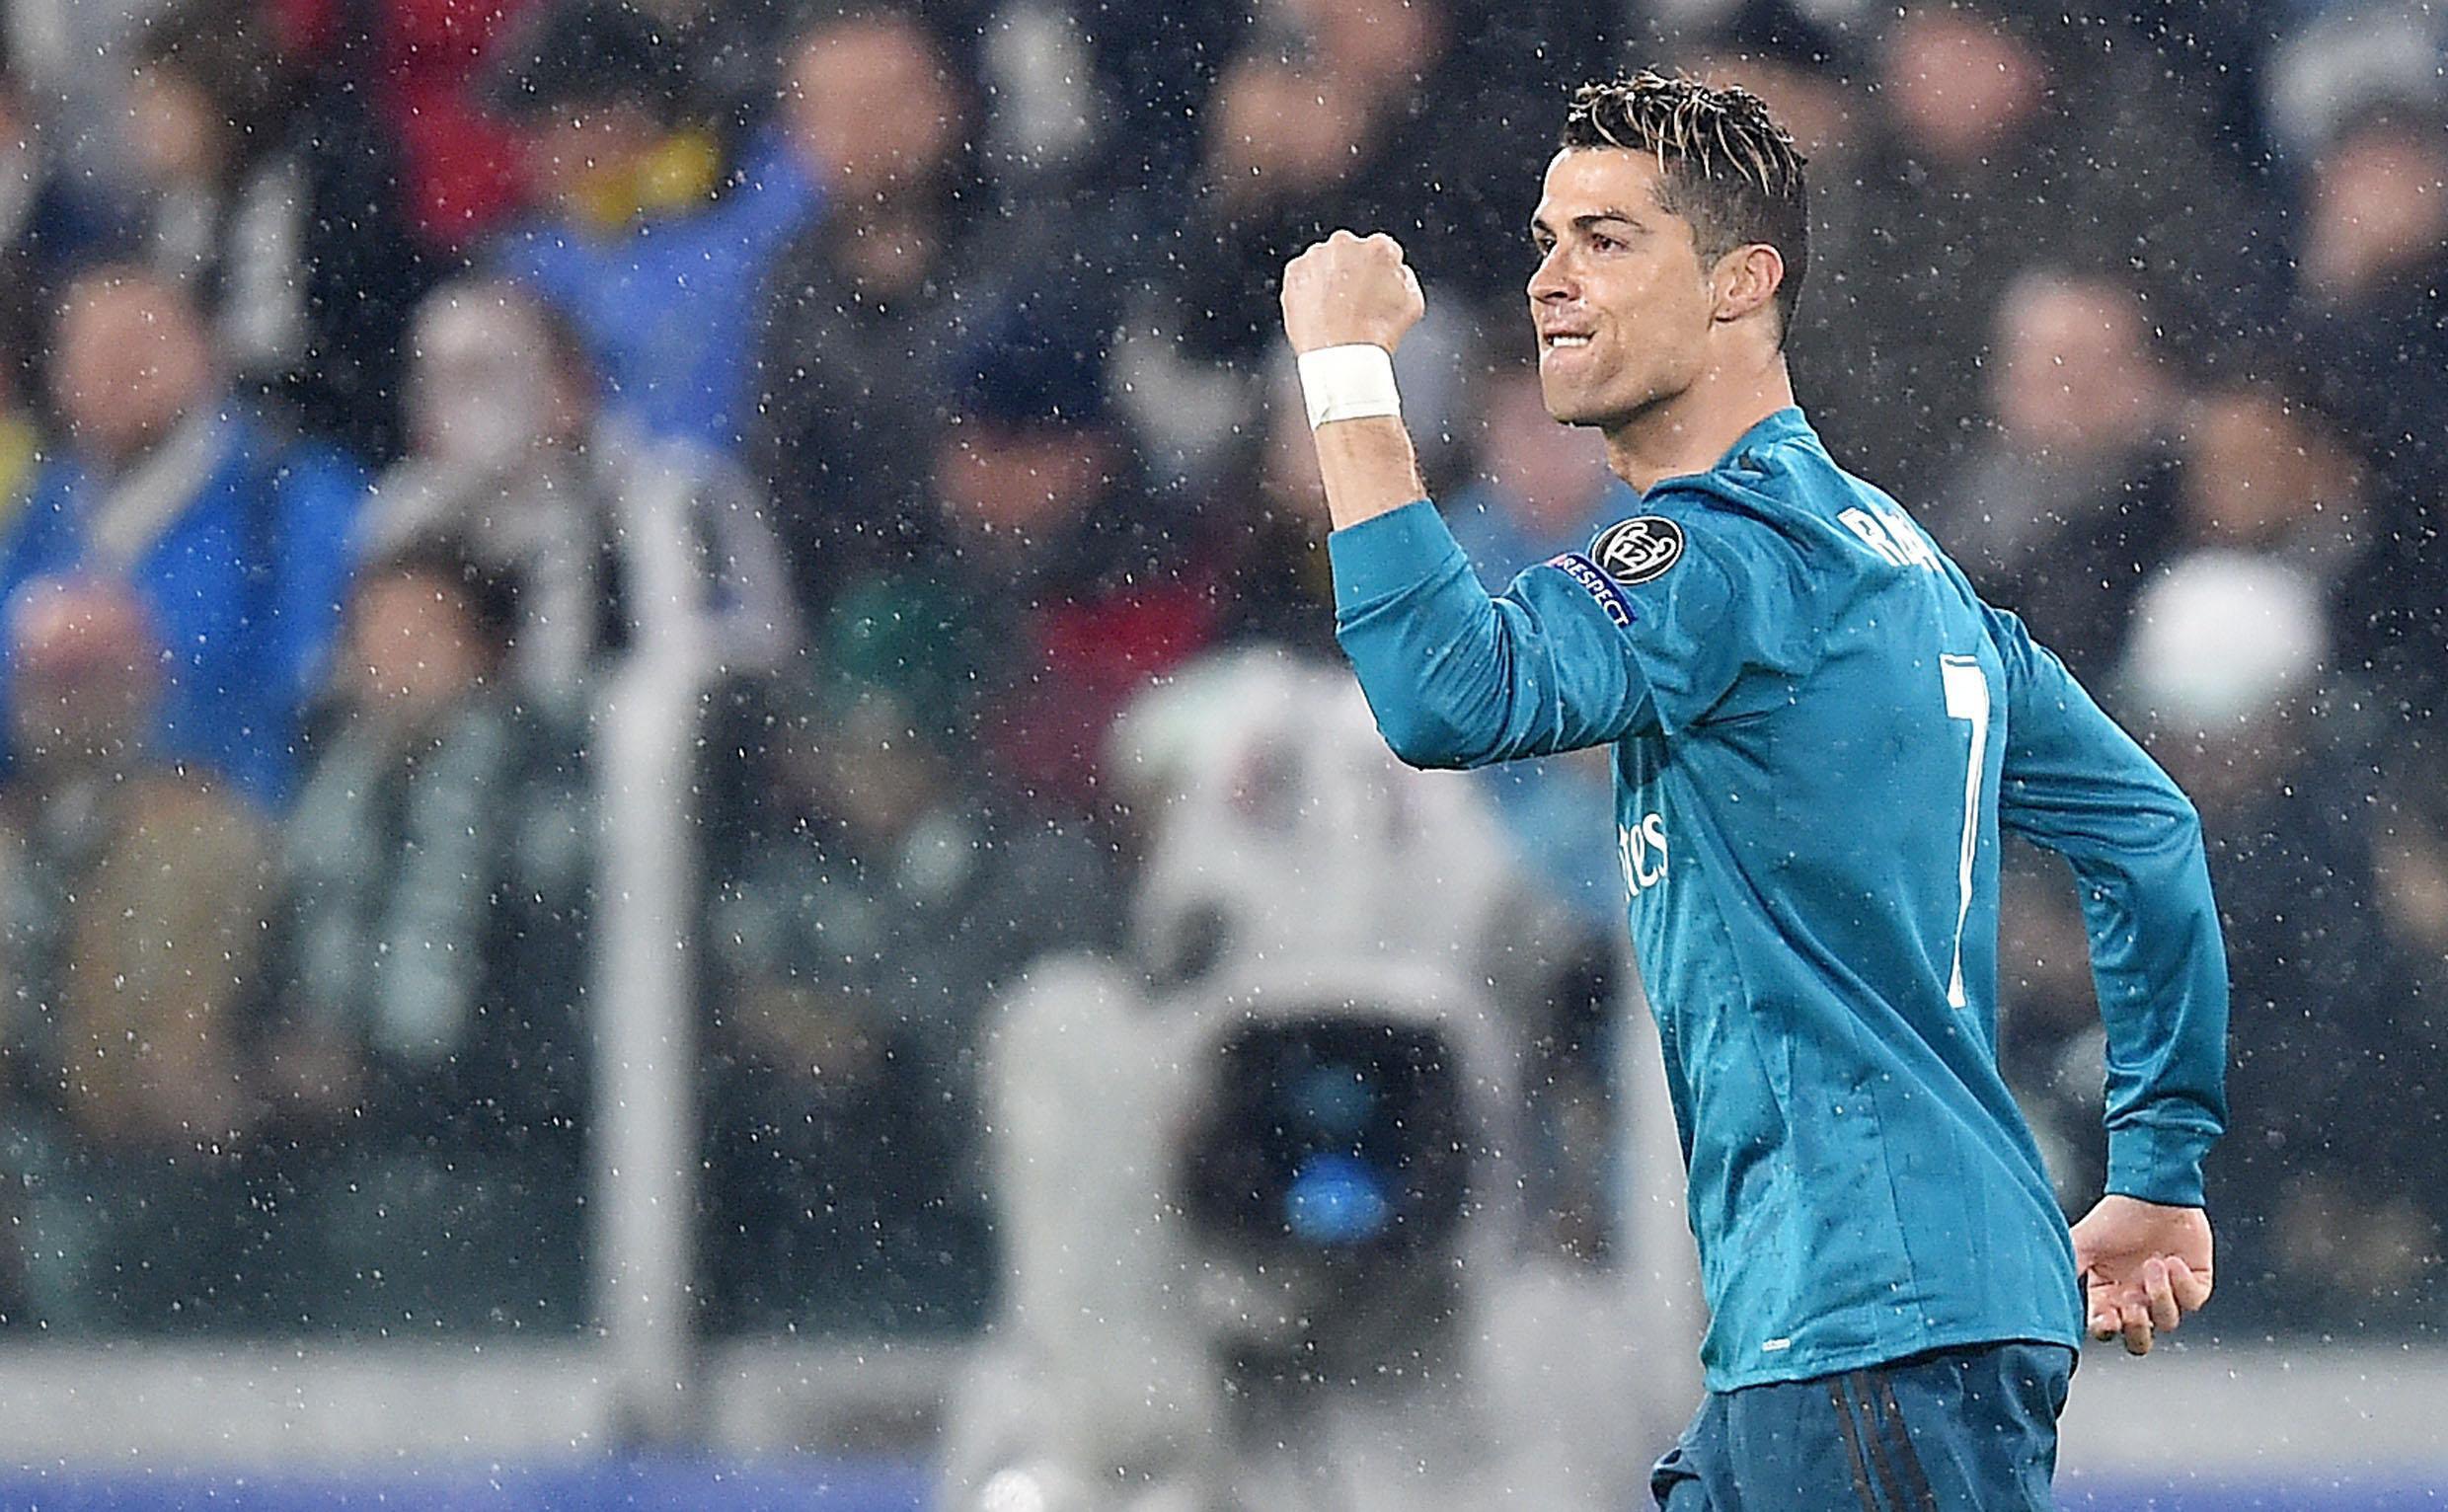 O golaço de bicicleta que o Cristiano Ronaldo acertou pulando a 2,10m de  altura entrou pra história! ⚽🏆 Juventus e Real Madrid se enfrentavam no, By Elby Sports